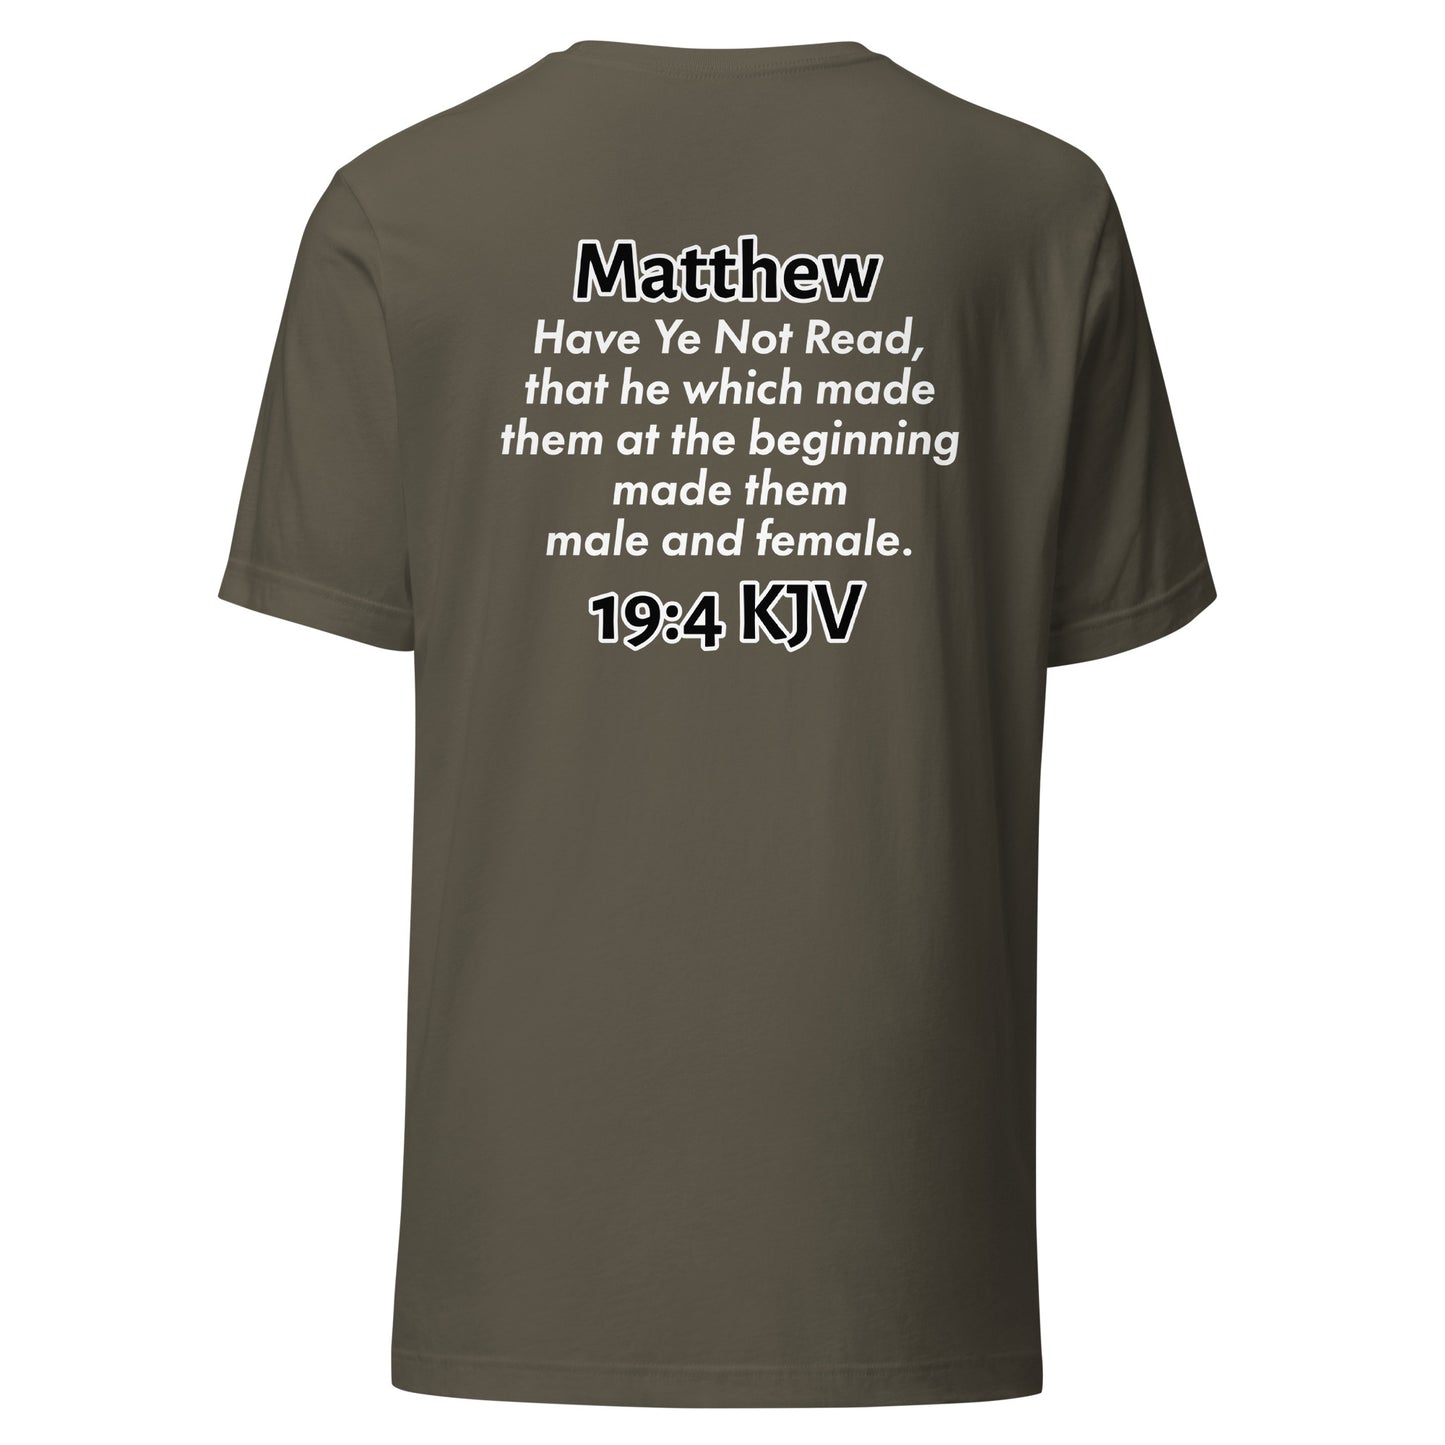 Matthew 19:4 T-Shirt